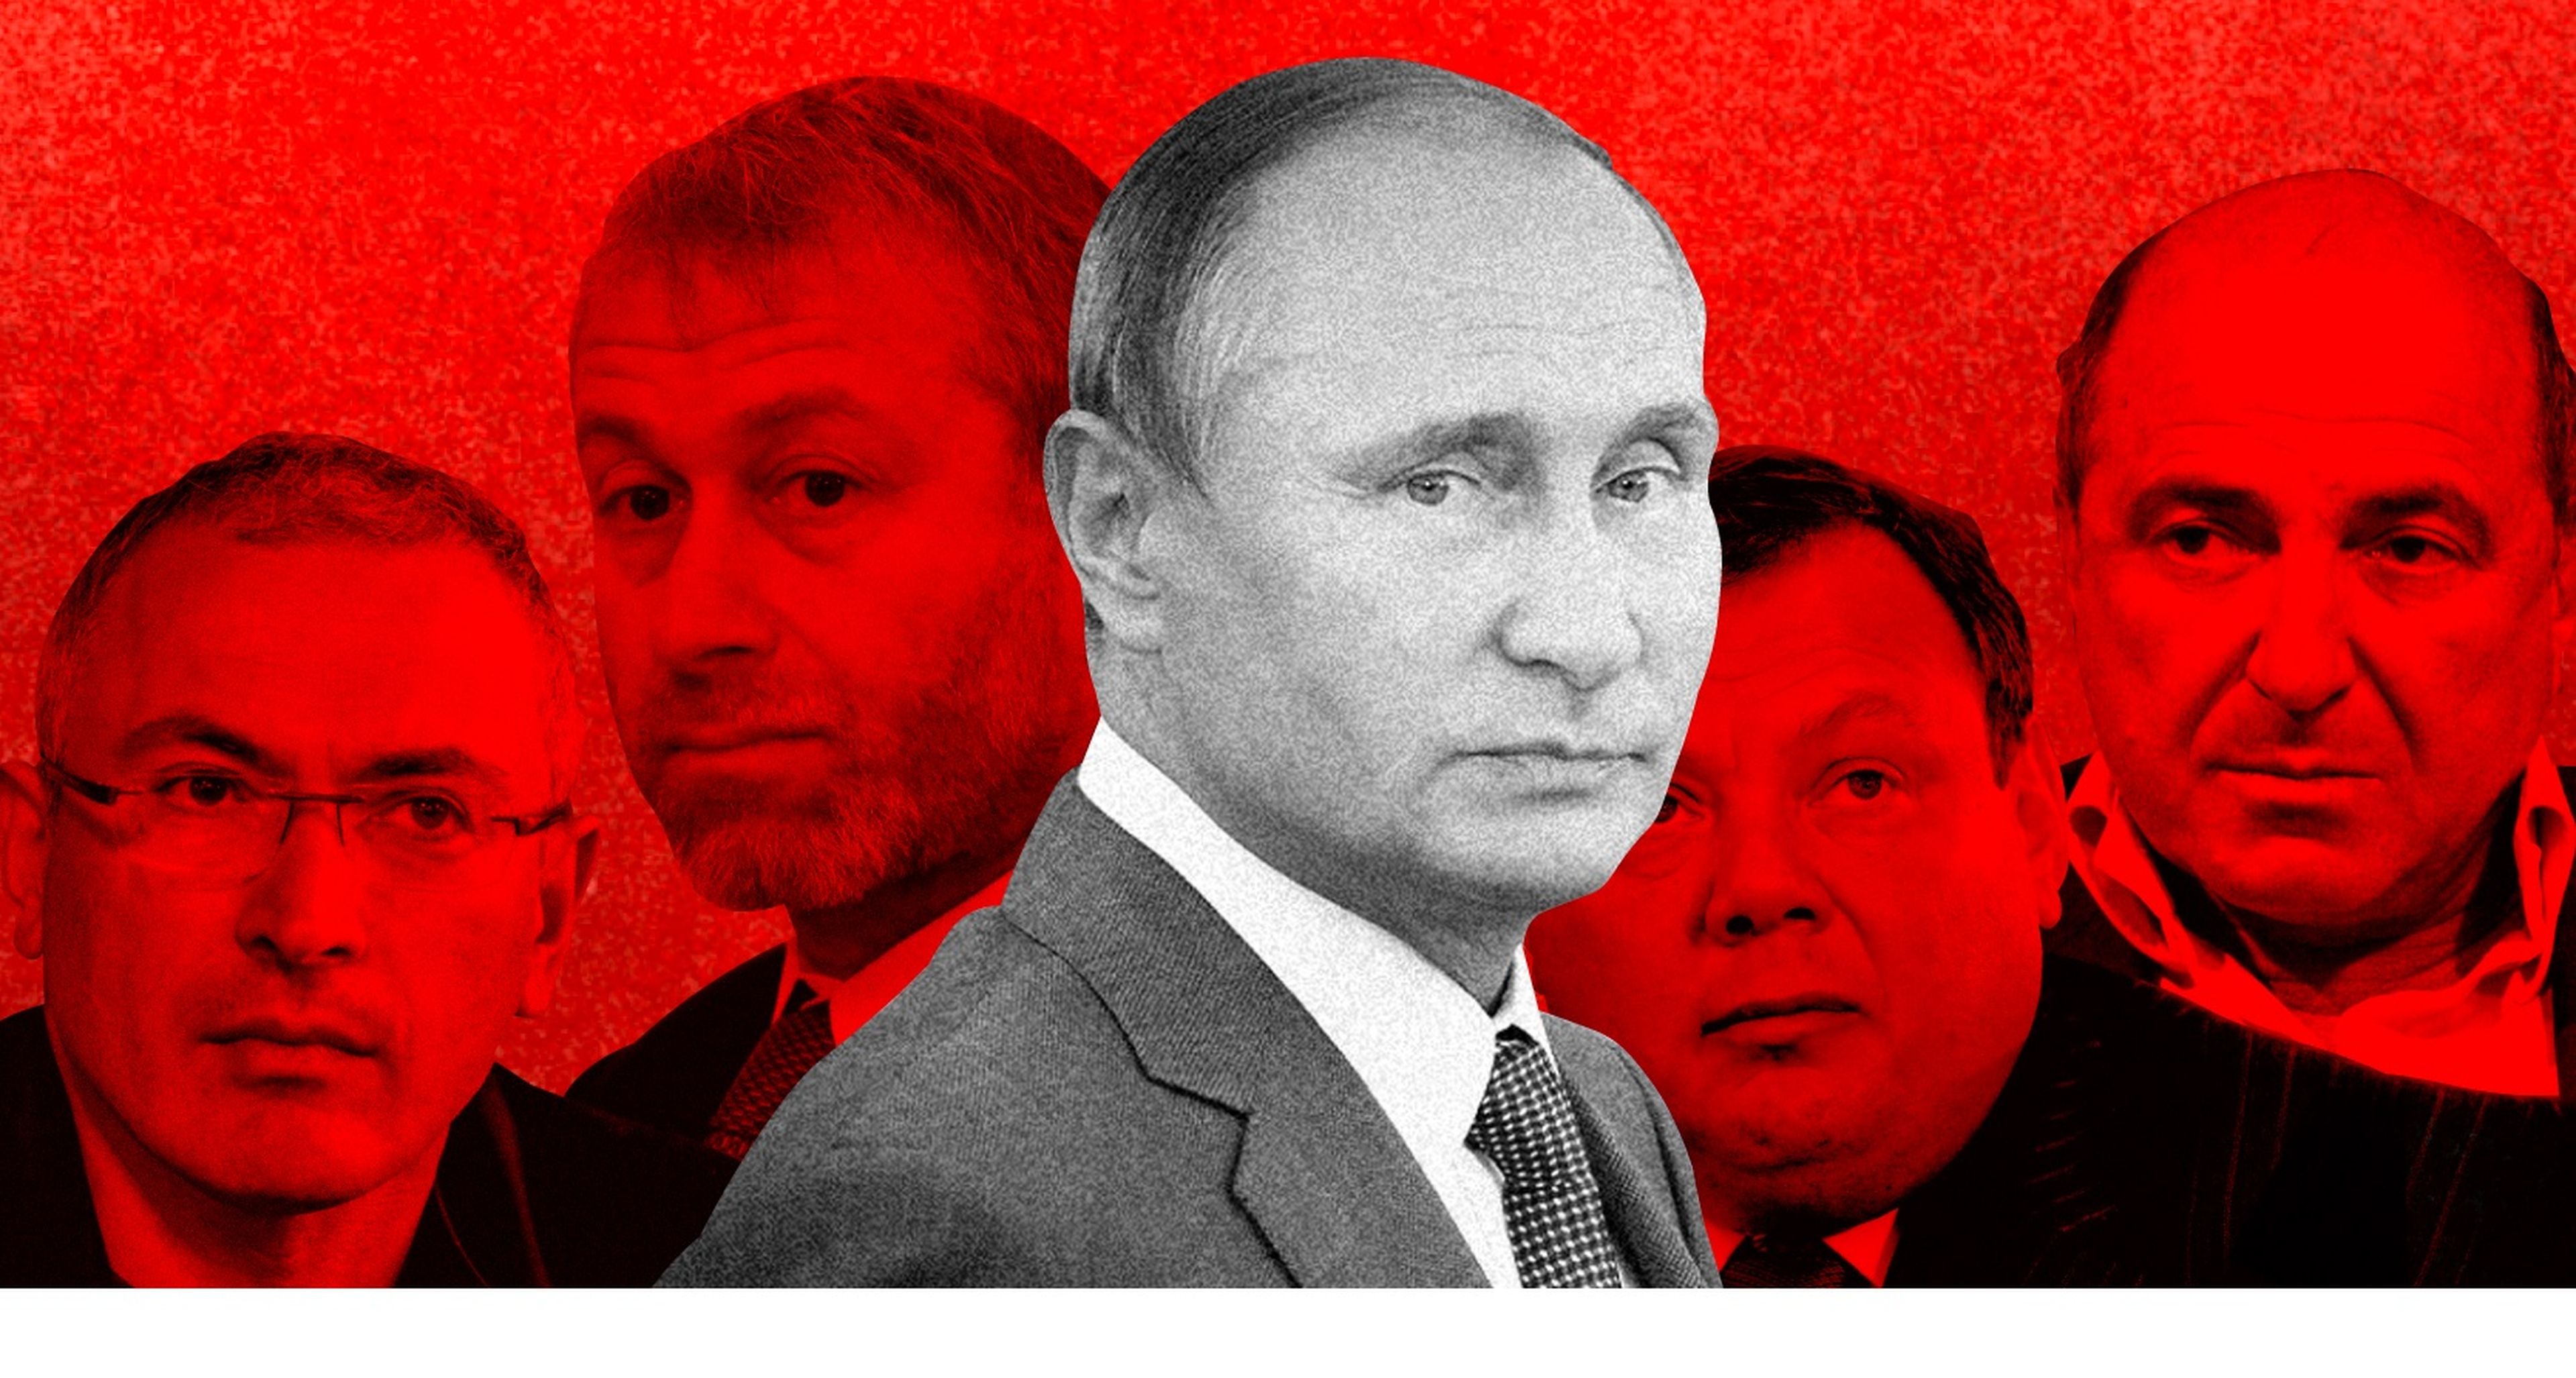 Los oligarcas rusos fueron en su día una colección de multimillonarios revoltosos, todos con sus propias parcelas de poder político. Vladímir Putin los convirtió en sus recaderos personales.